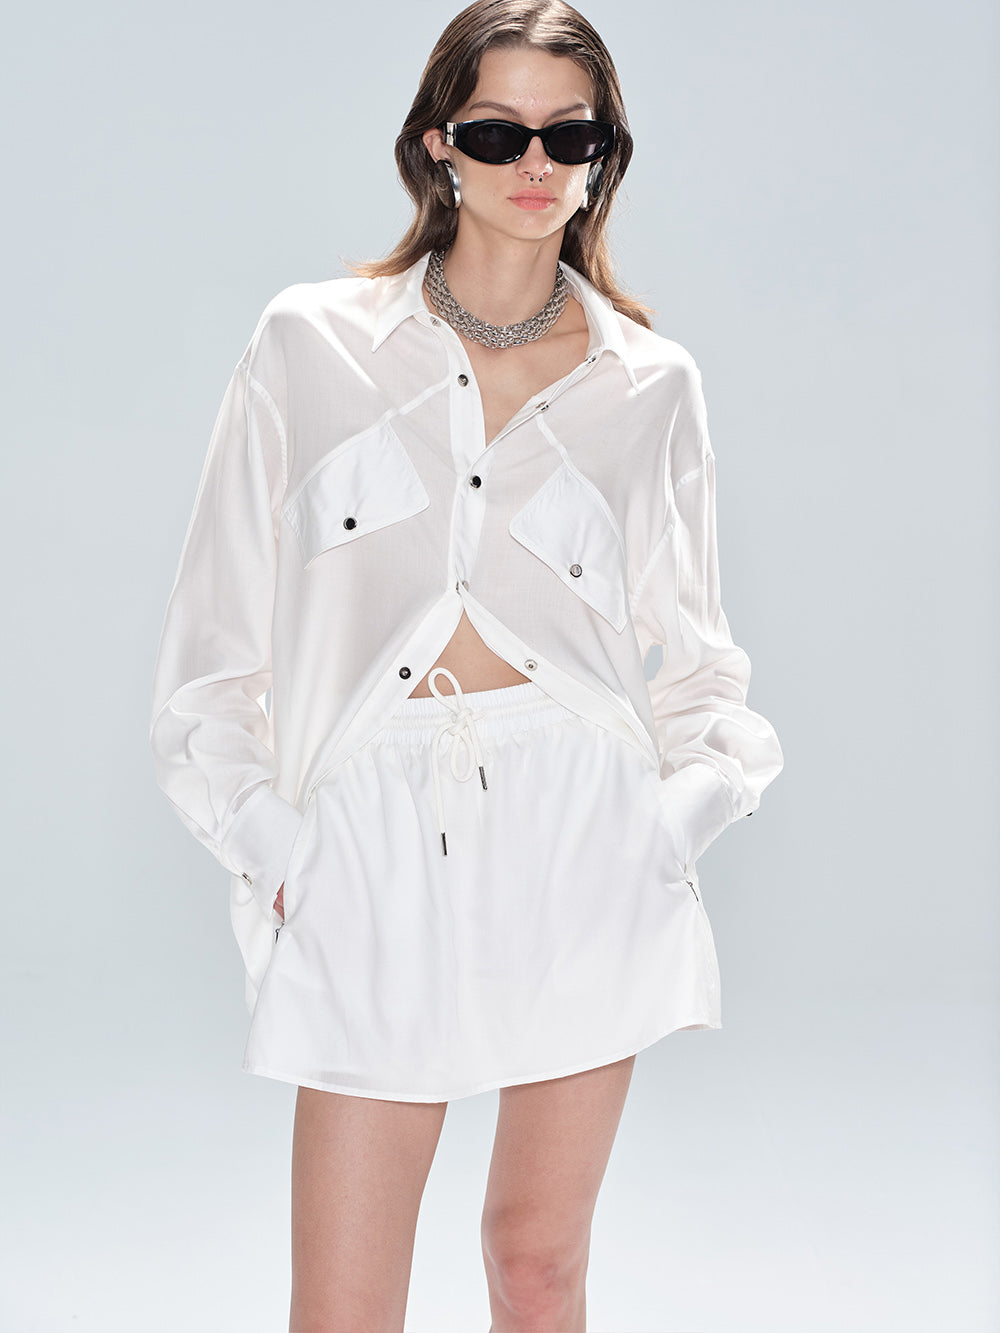 MUKTANK x MODULER Tencel Loose Shirt and Shorts Sun Protection Coordinating Set - Top